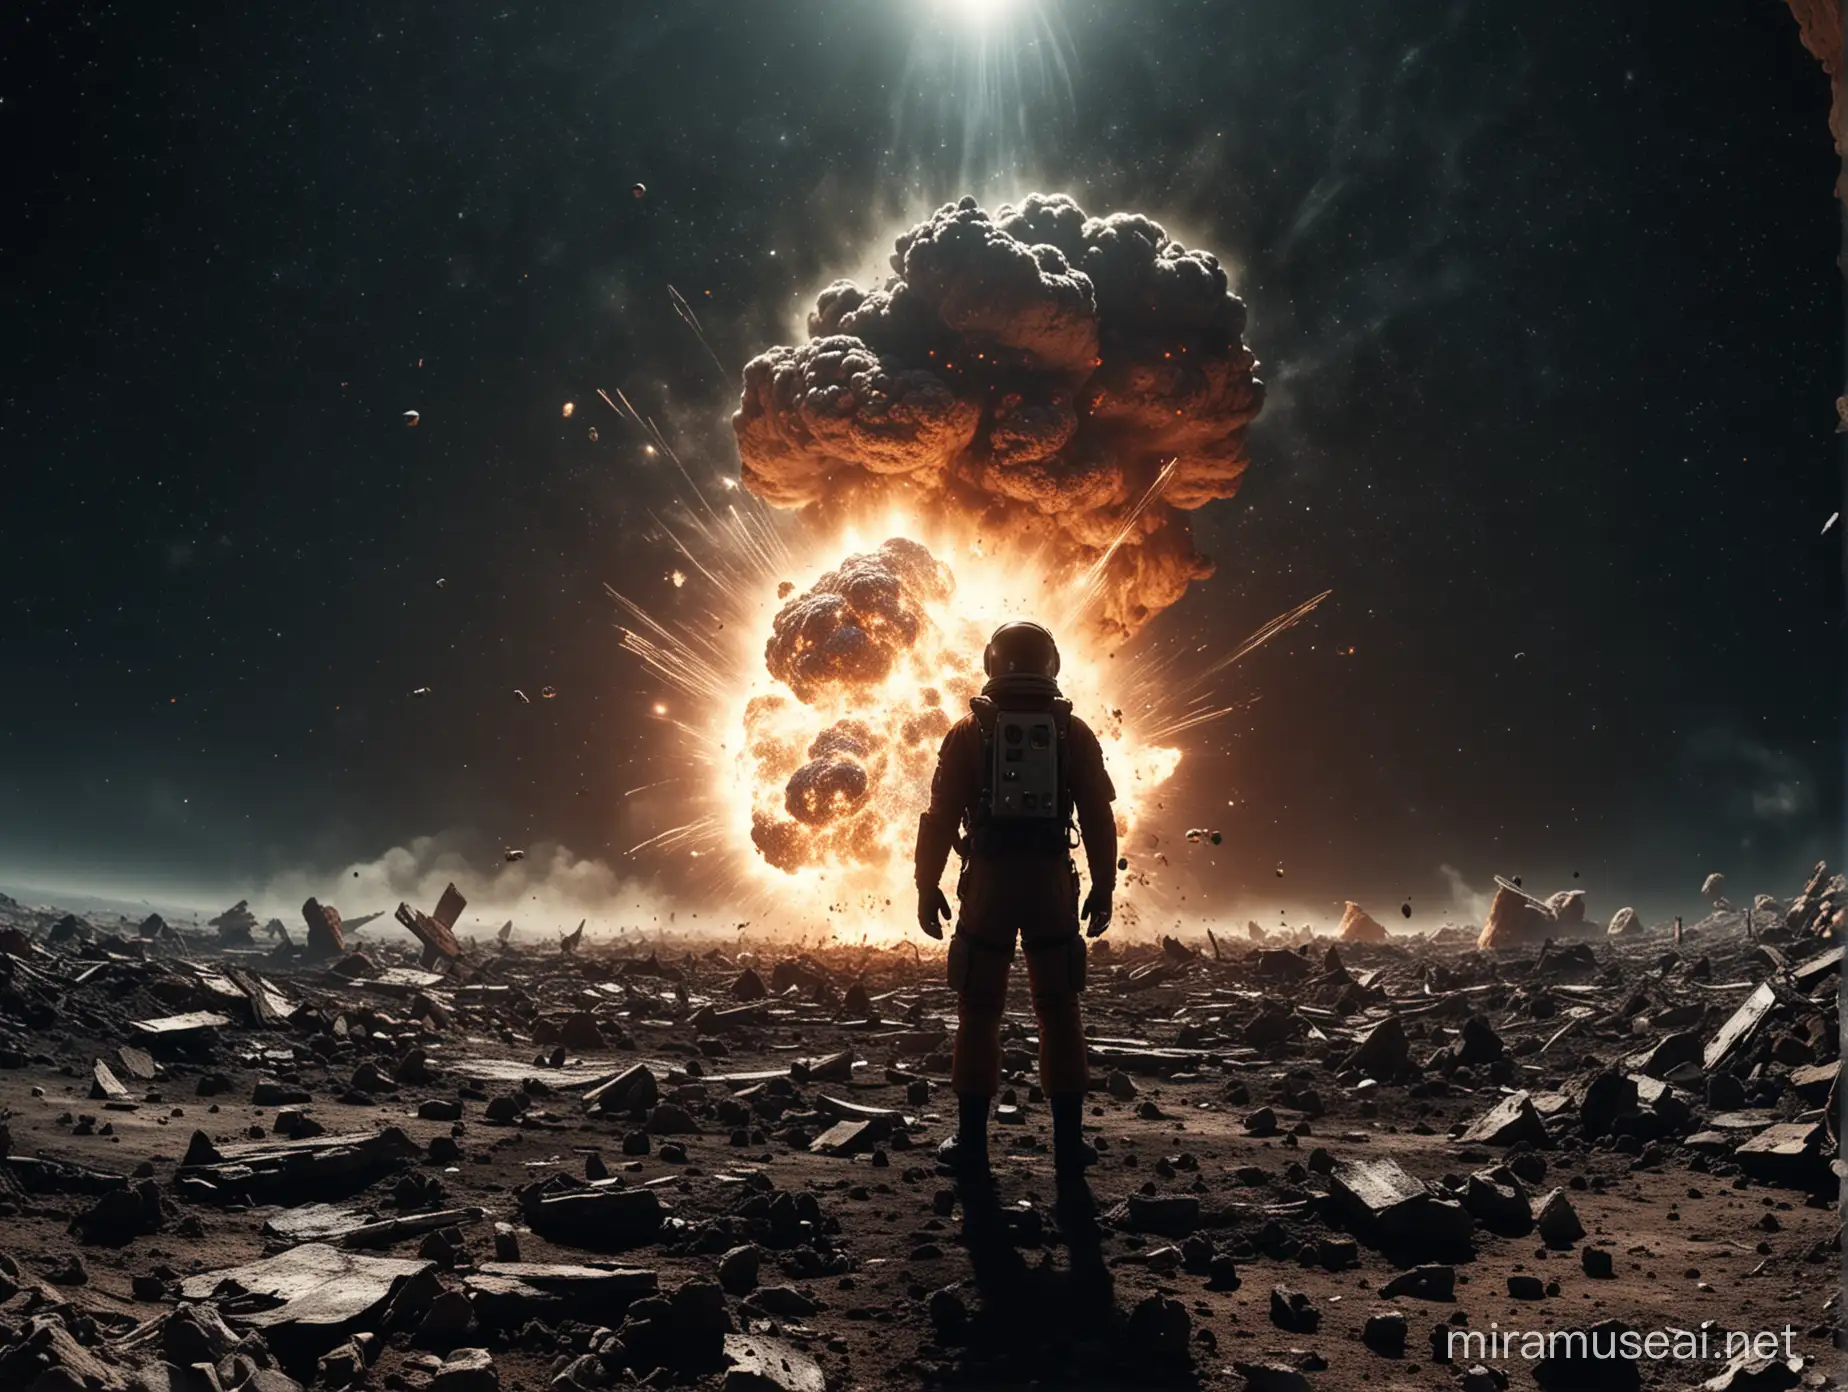 Человек в космосе около земли видит как погибает вселенная от большого взрыва. Обломки врезаются в землю и она горит. Снято со спины главного героя на 28 мм, диафрагма 1.8